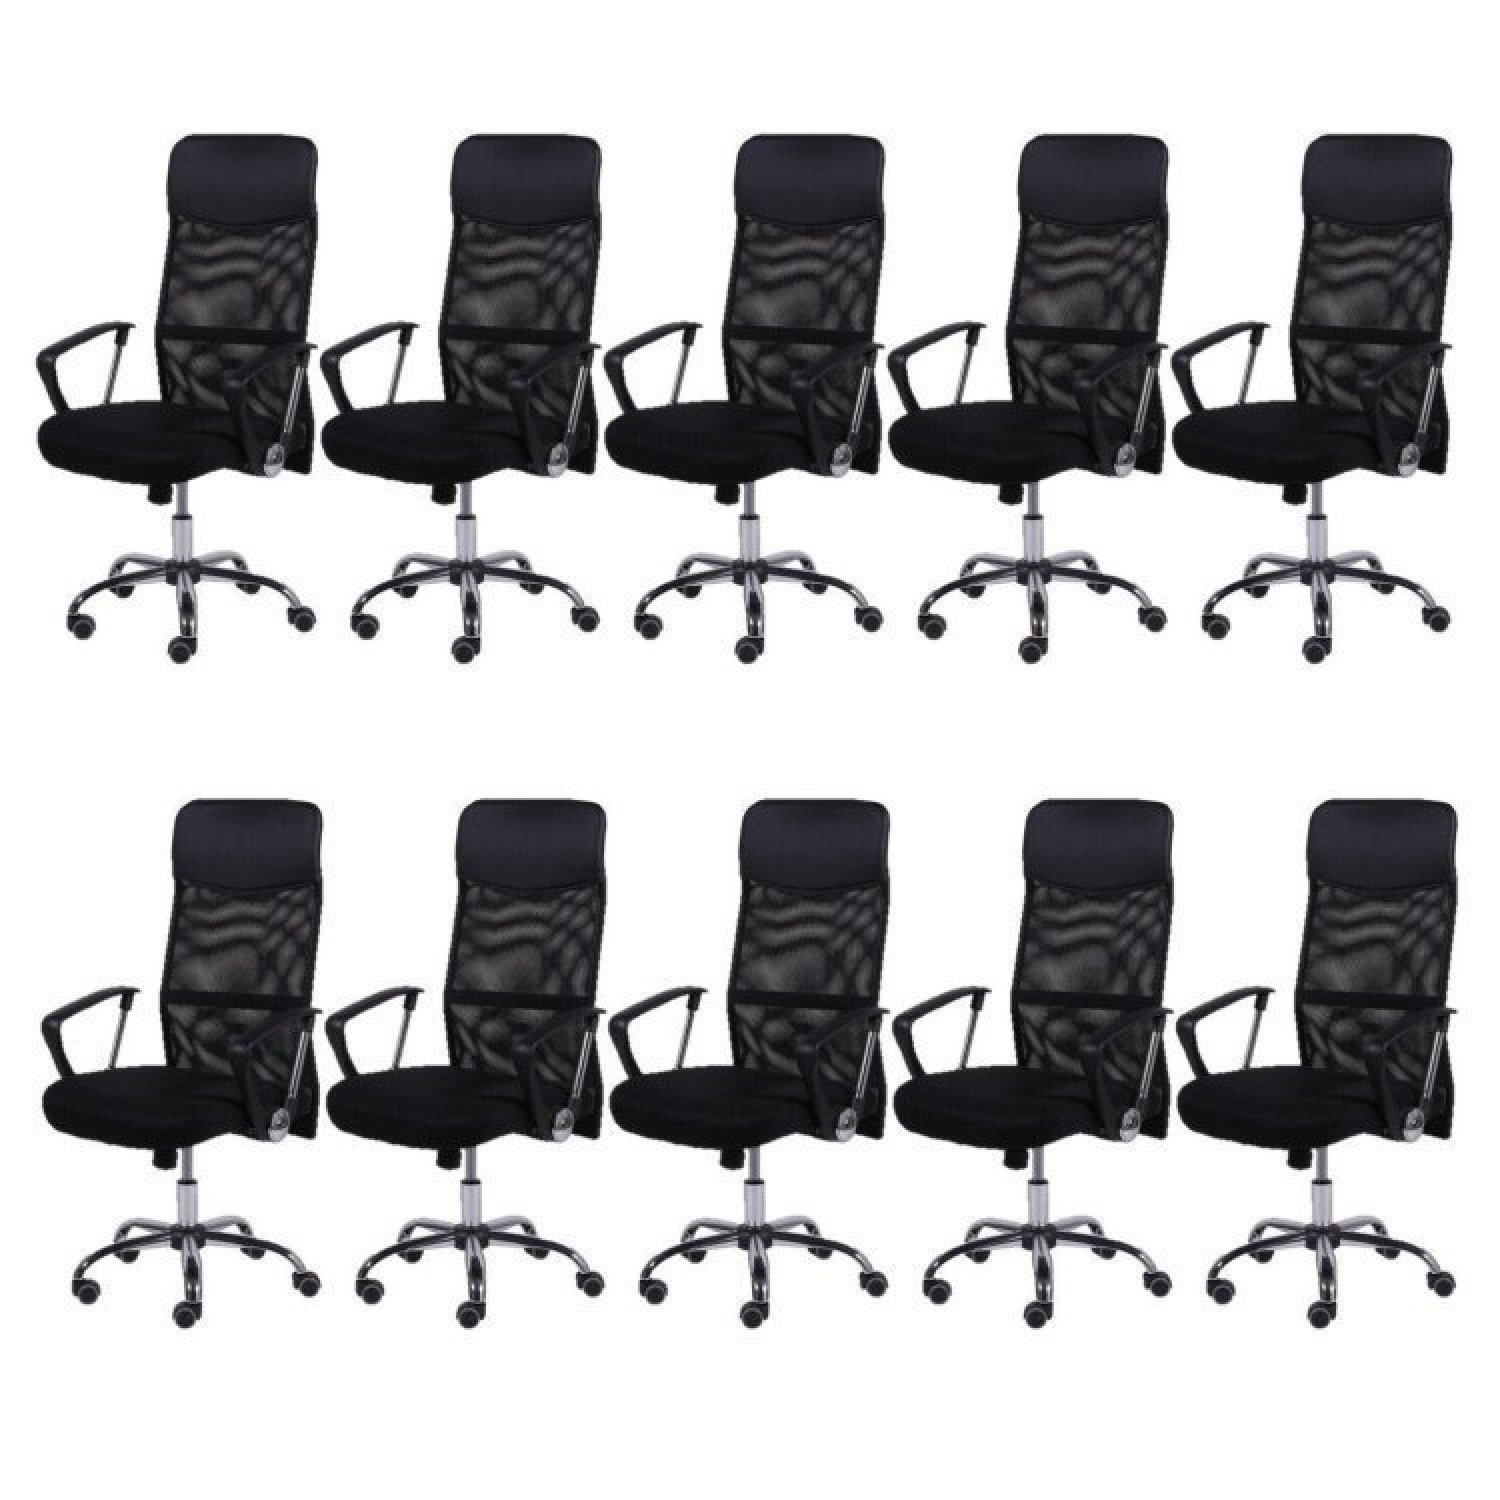 Kit 10 Cadeiras para Escritório Presidente em Corino e Tela Mesh com Rodízios 3307 OR Design